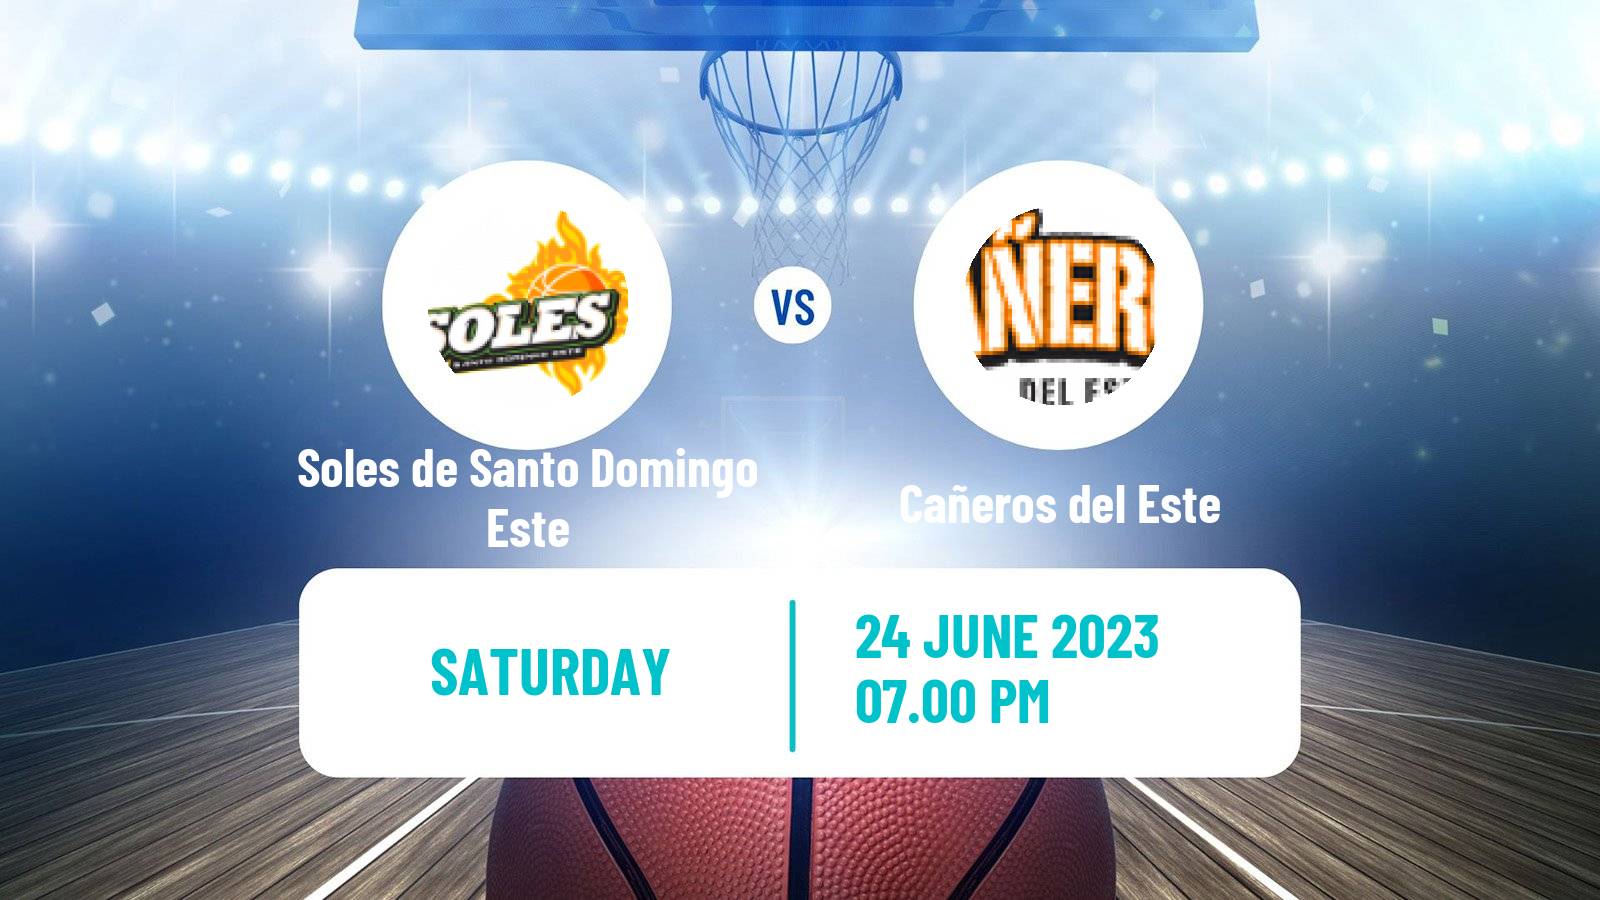 Basketball Dominican Republic LNB Basketball Soles de Santo Domingo Este - Cañeros del Este